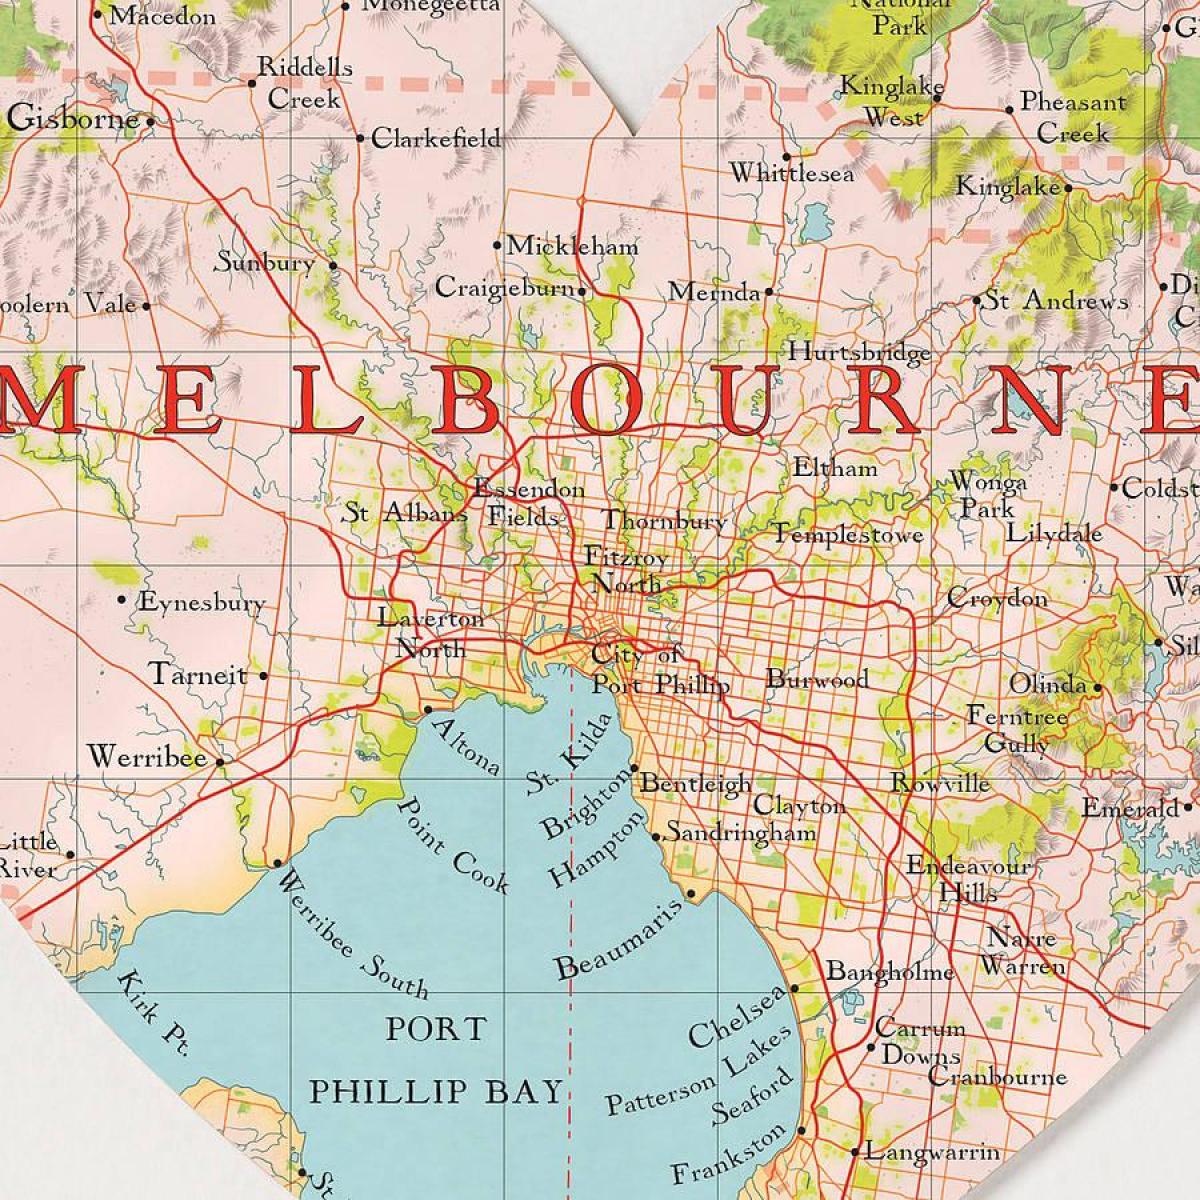 Мелбурн мапата на светот